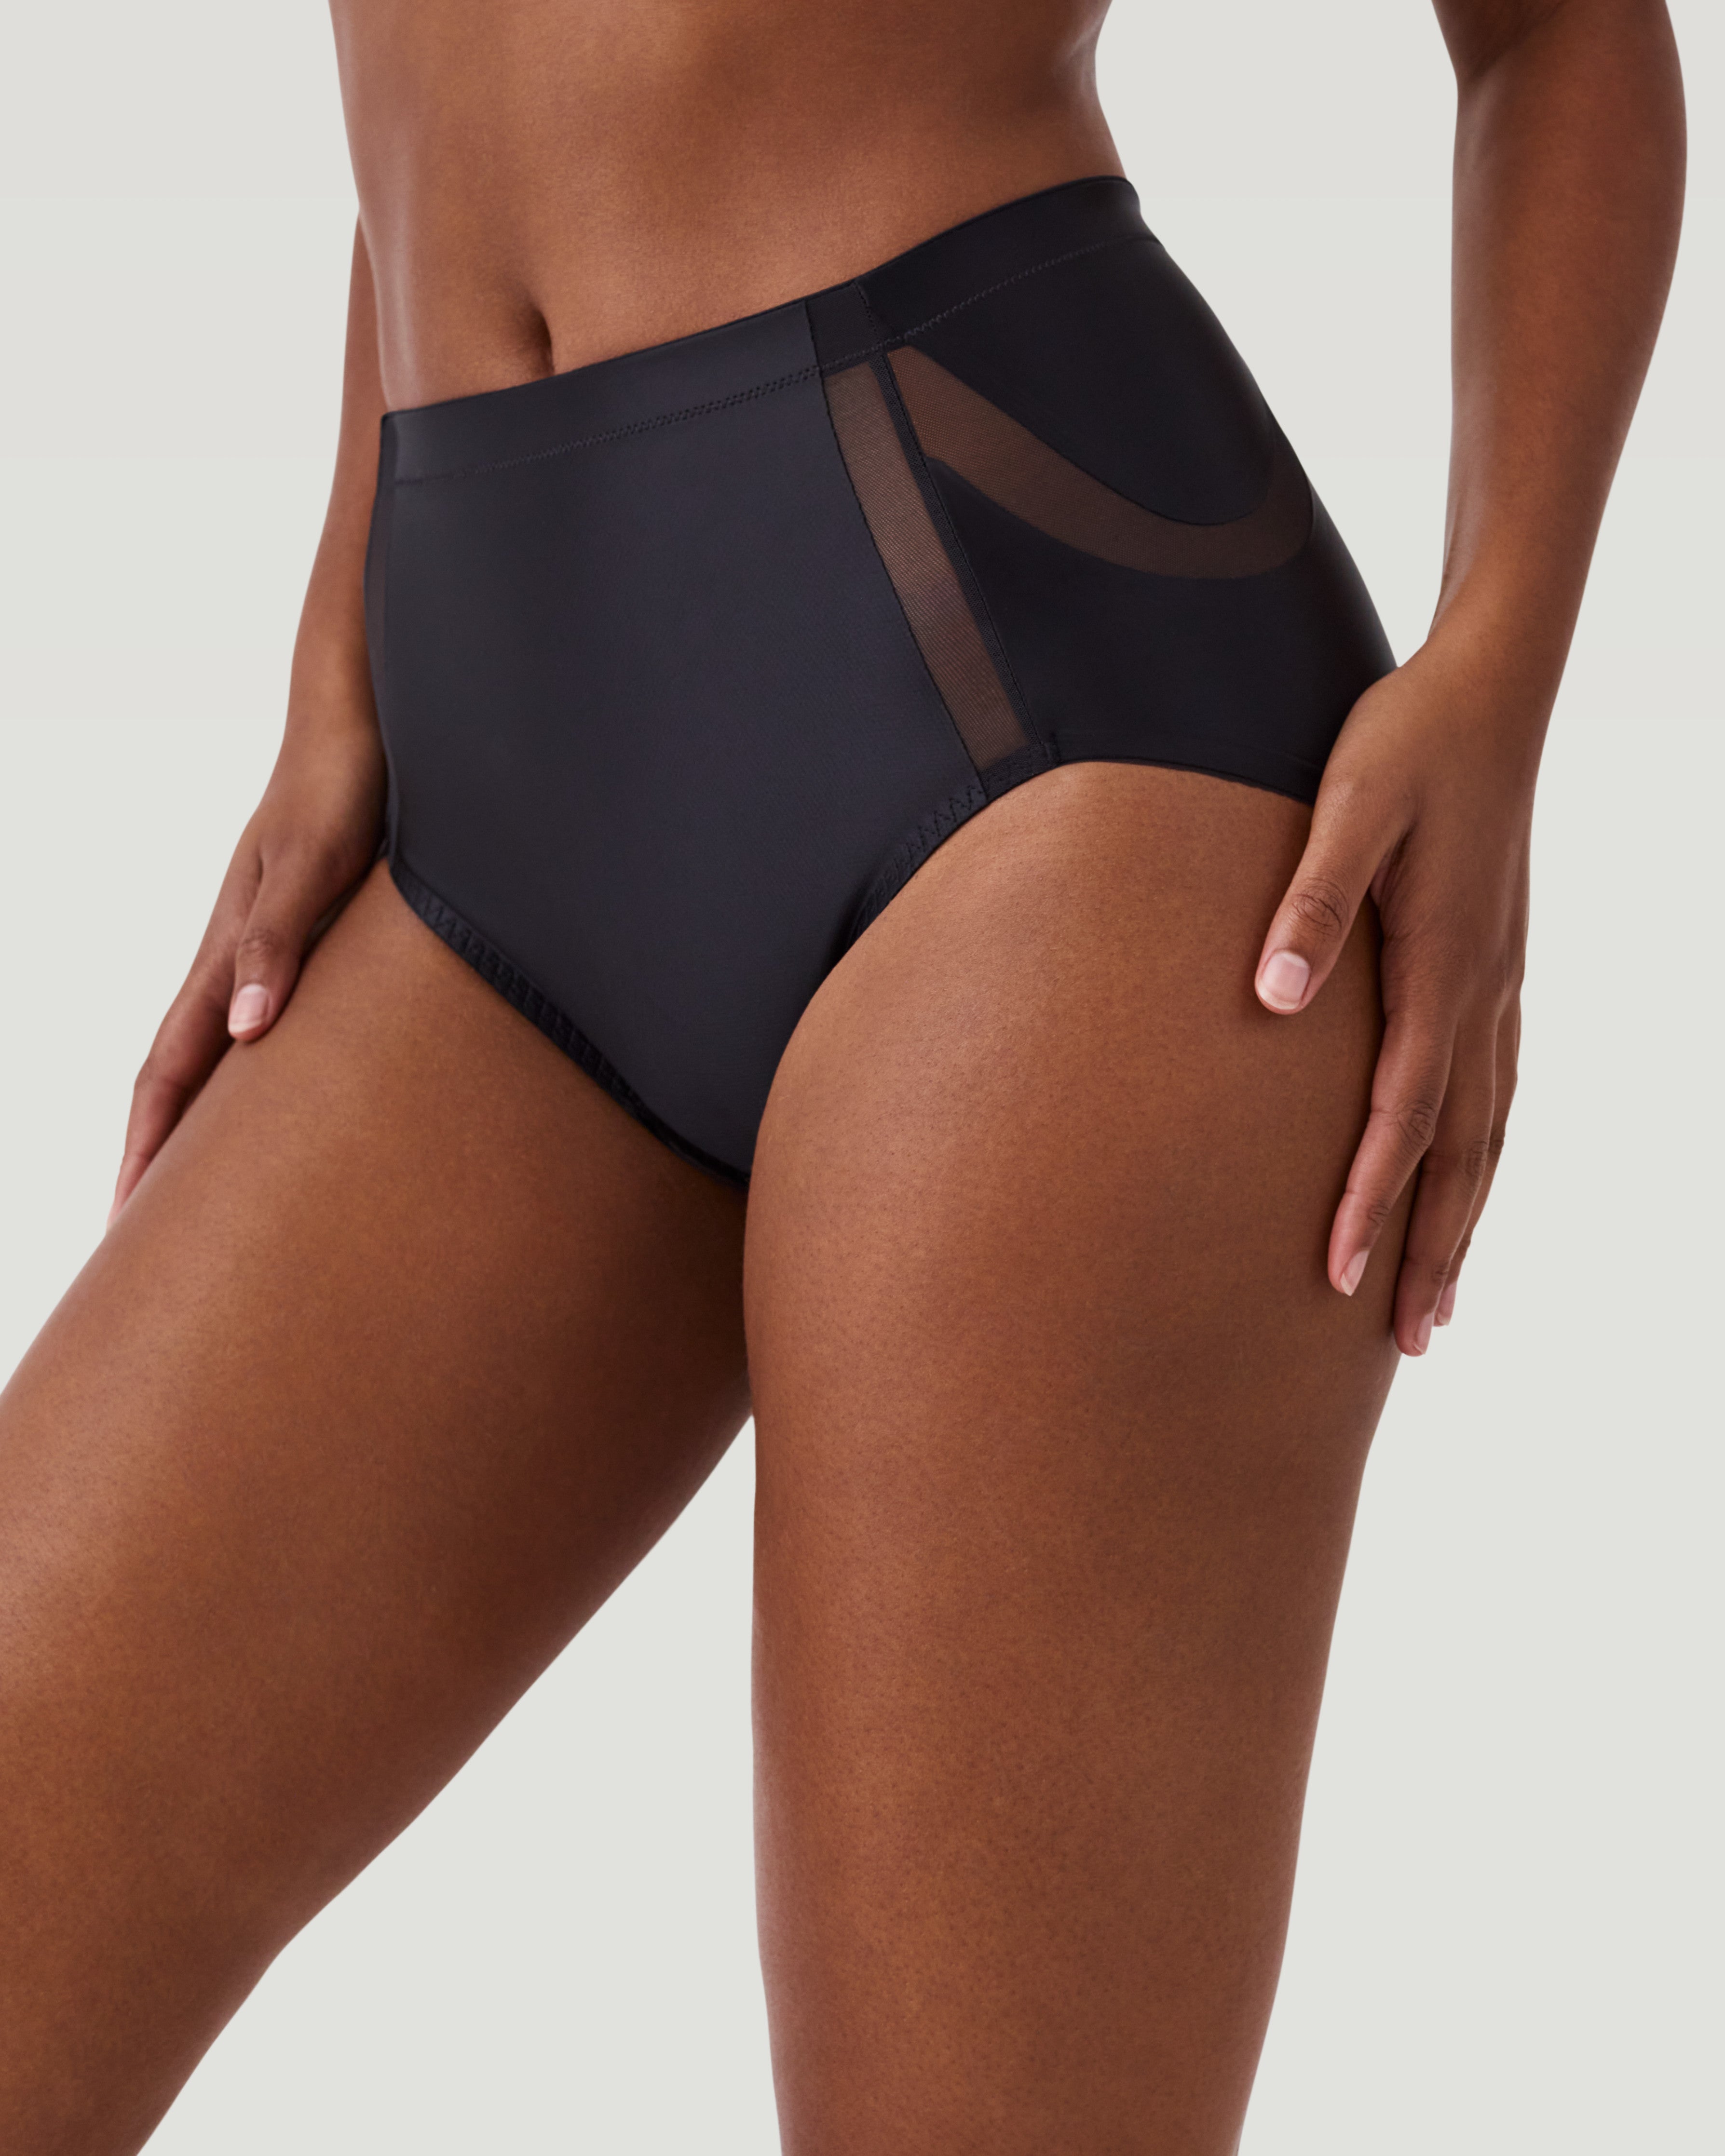 Buy DODOING Butt Lifting Underwear Boy Shorts Butt Lifter Body